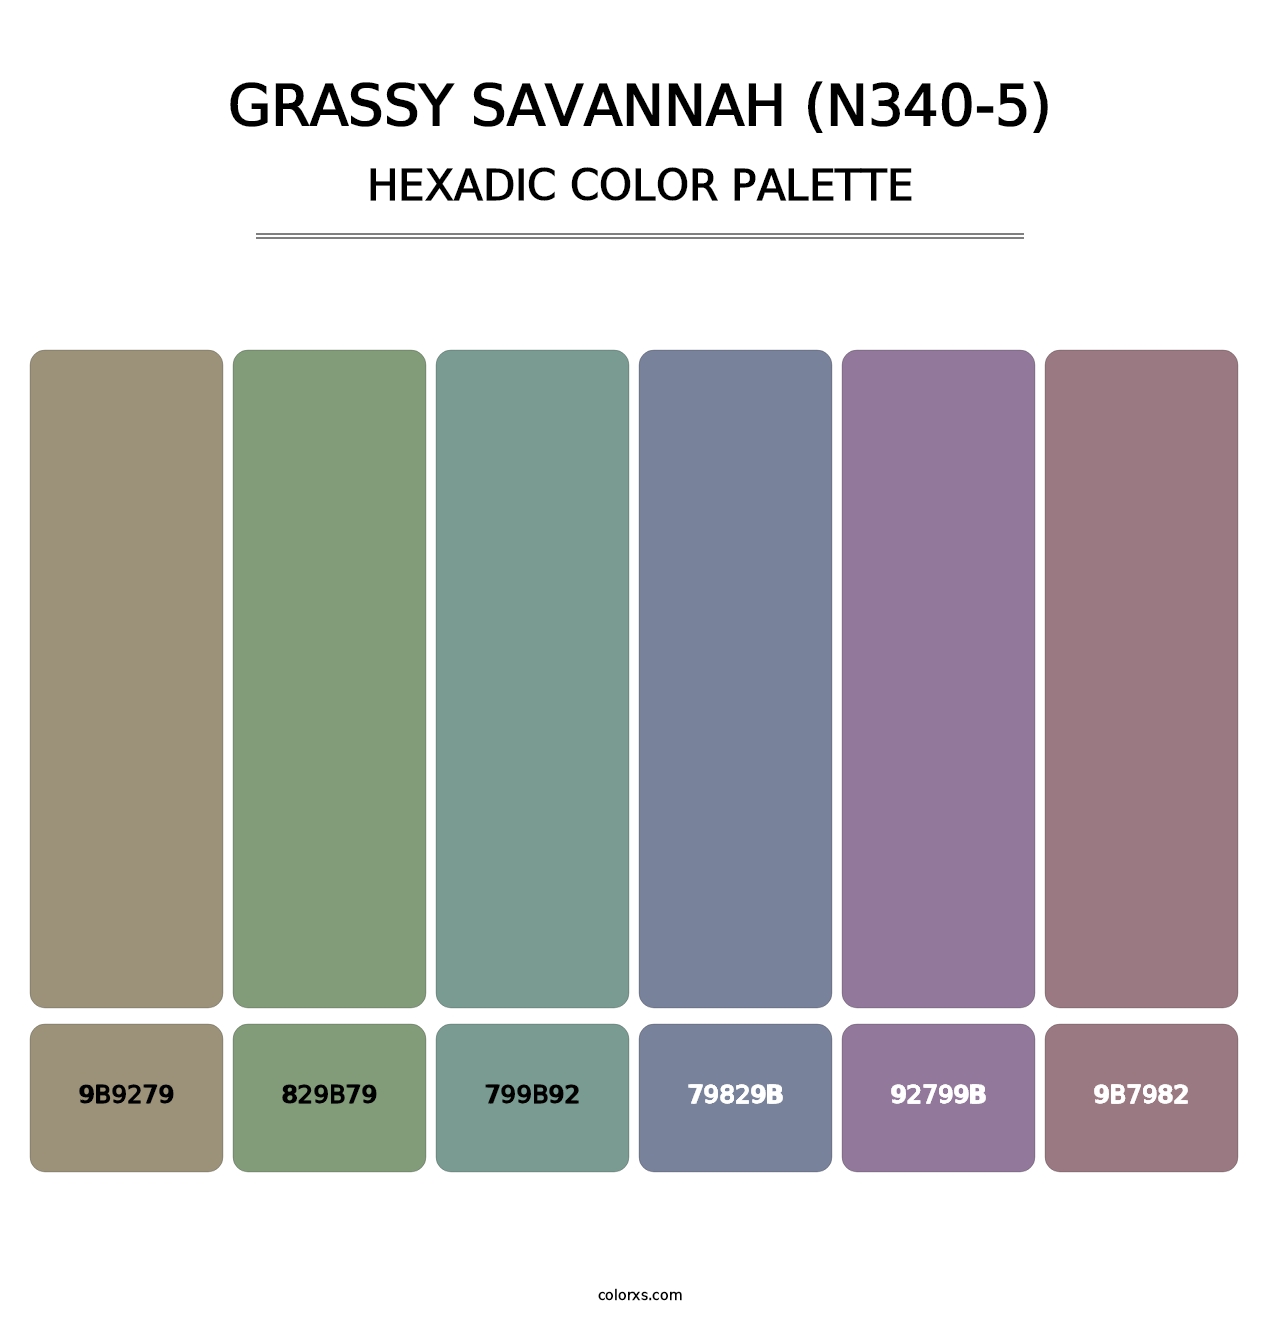 Grassy Savannah (N340-5) - Hexadic Color Palette